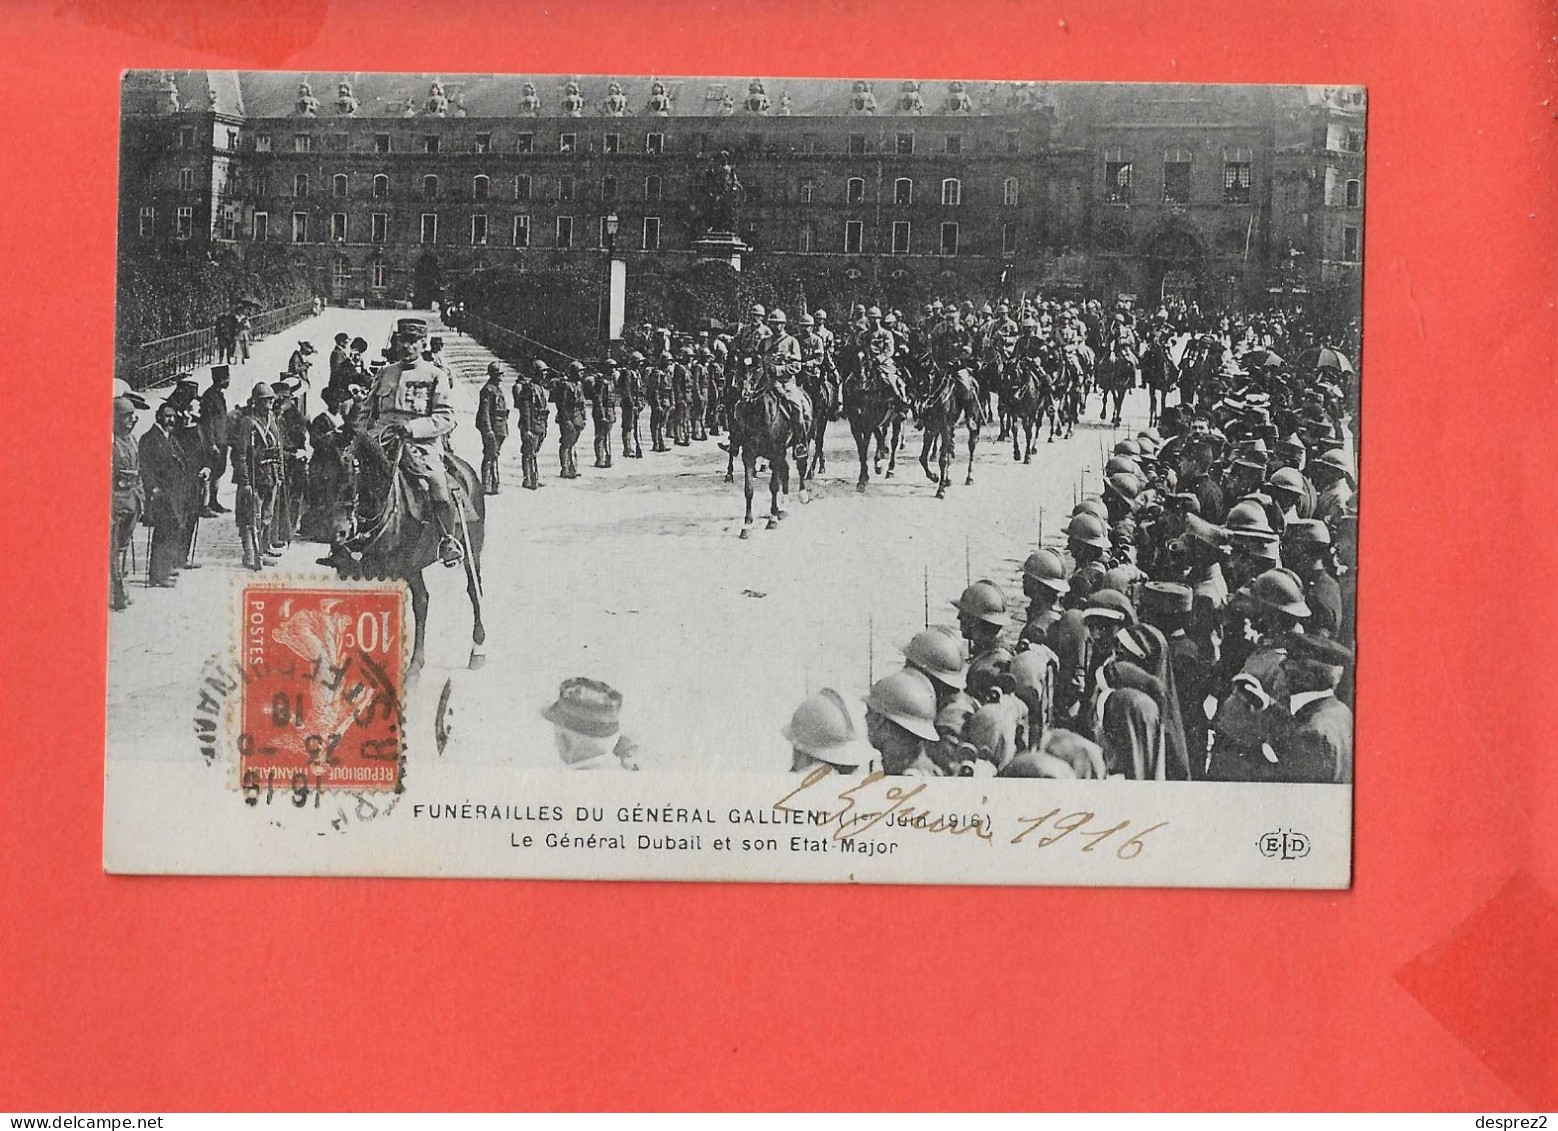 FUNERAILLES Du Général GALLIENI Cpa Animée Le 1 Er Juin 1916 - Funeral